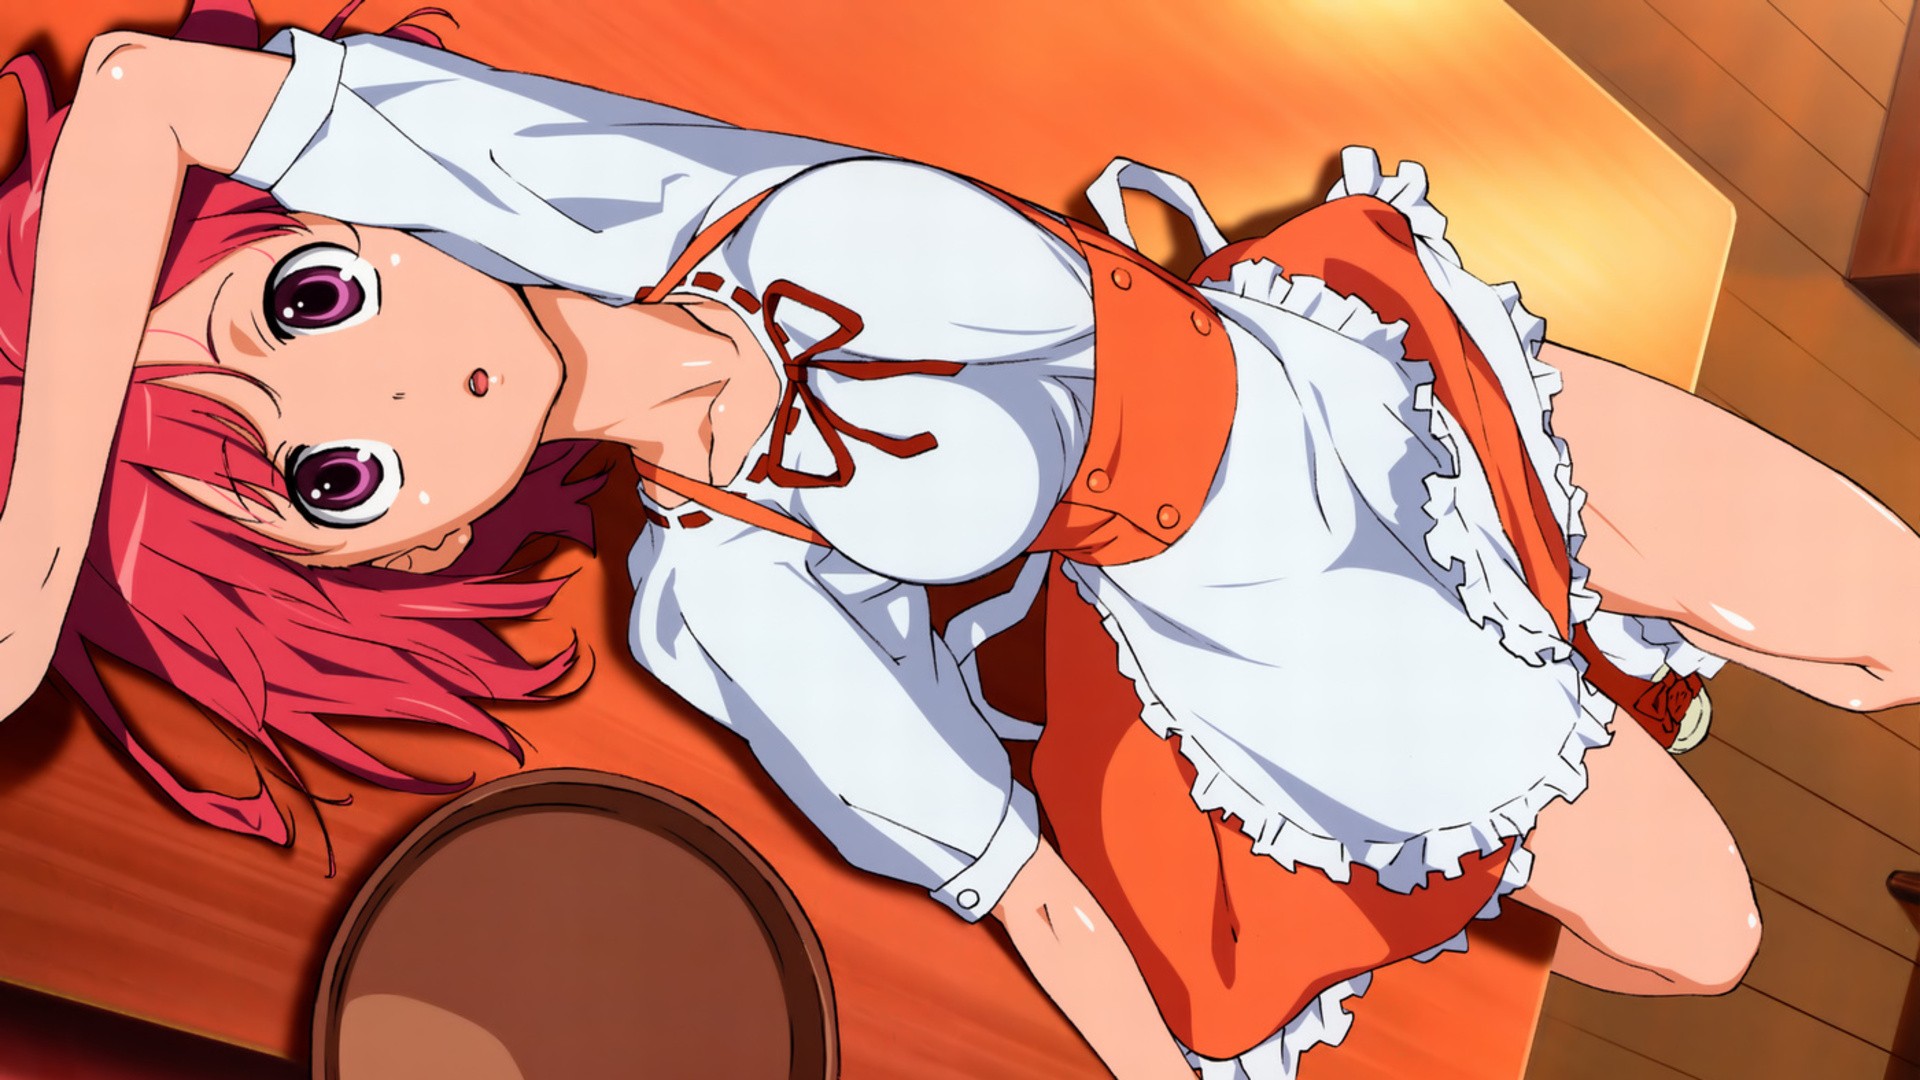 Anime 1920x1080 Toradora! anime girls anime Kushieda Minori lying on back redhead purple eyes looking at viewer